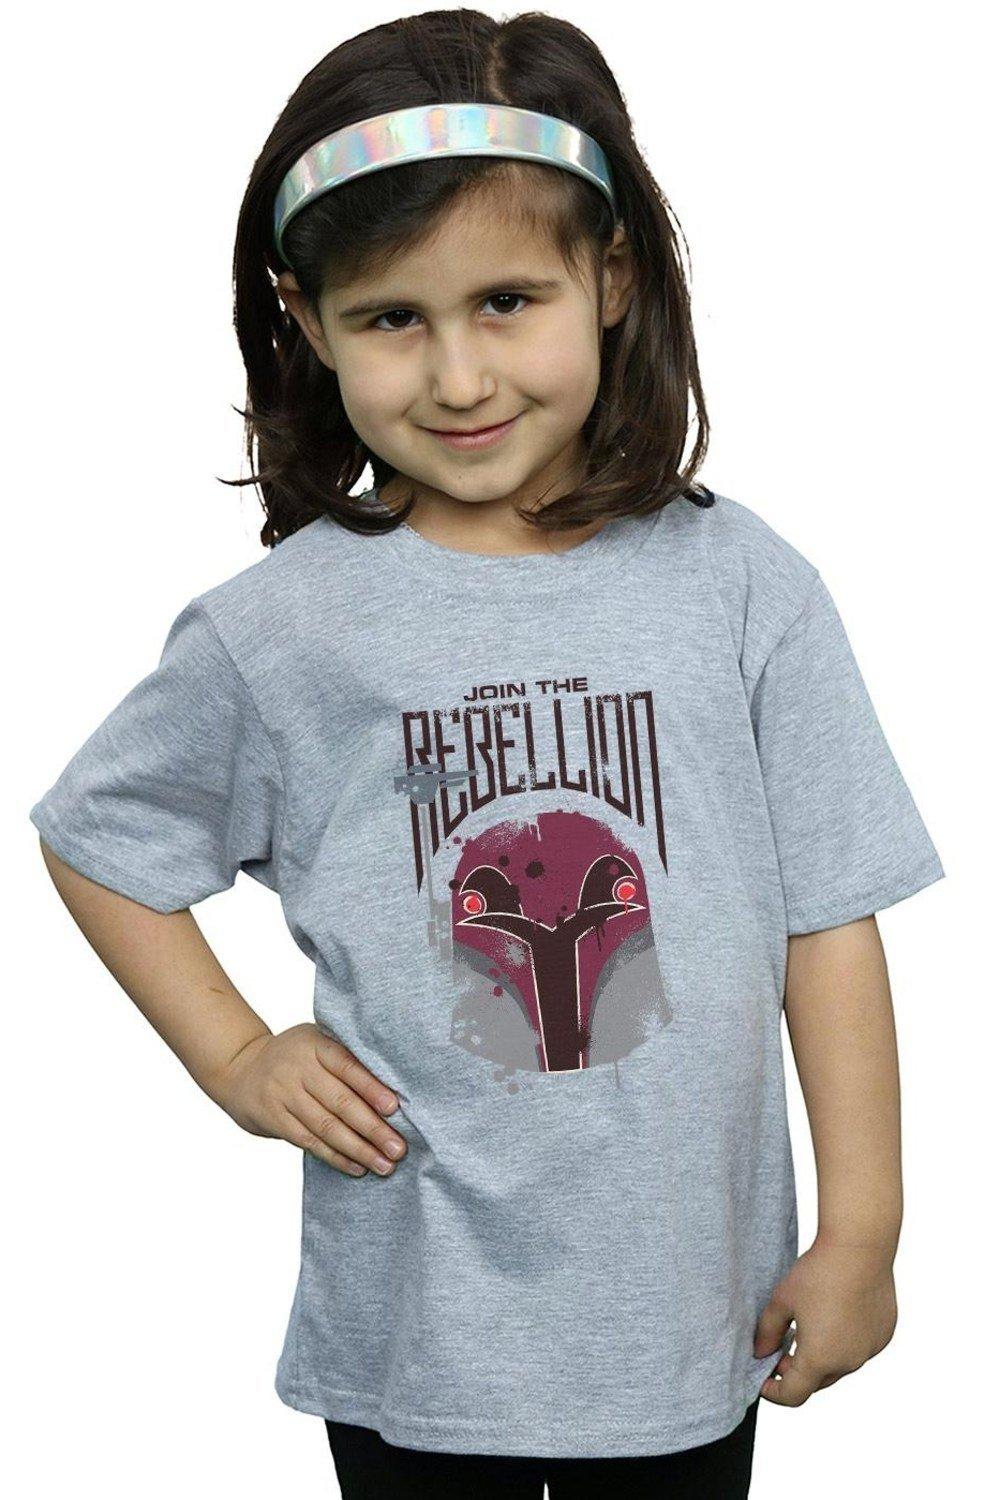 Хлопковая футболка Rebels Rebellion Star Wars, серый хлопковая футболка rebels hera star wars черный